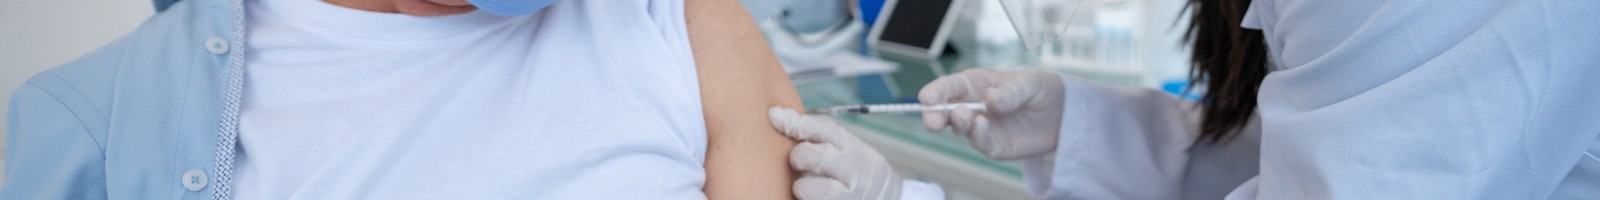 Covid-19, de nouveaux vaccins pour renforcer la protection des personnes fragiles contre le variant Eris